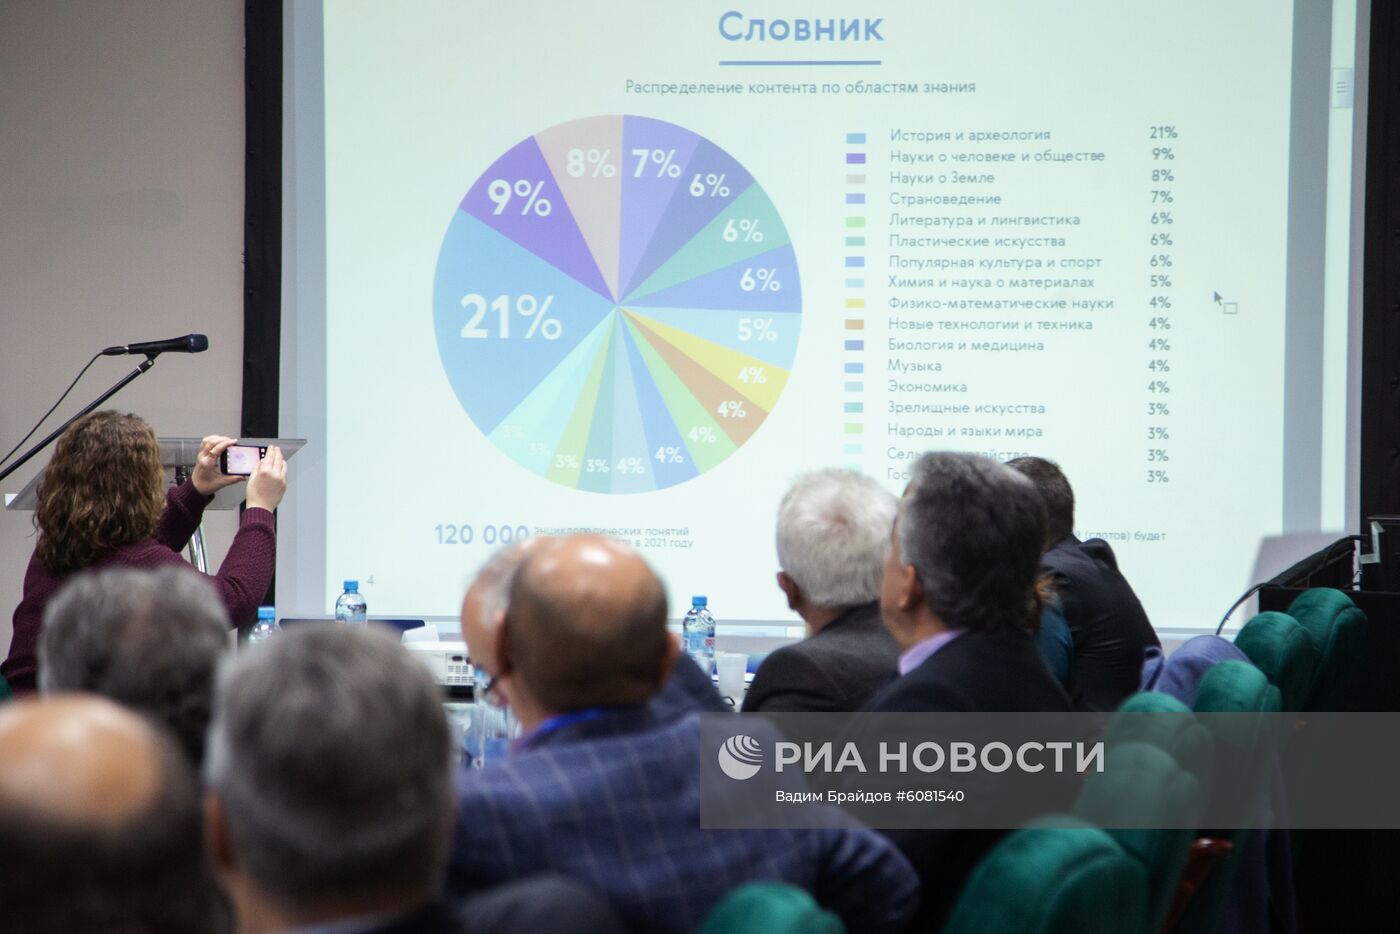 Презентация проекта российского аналога "Википедии" в Уфе